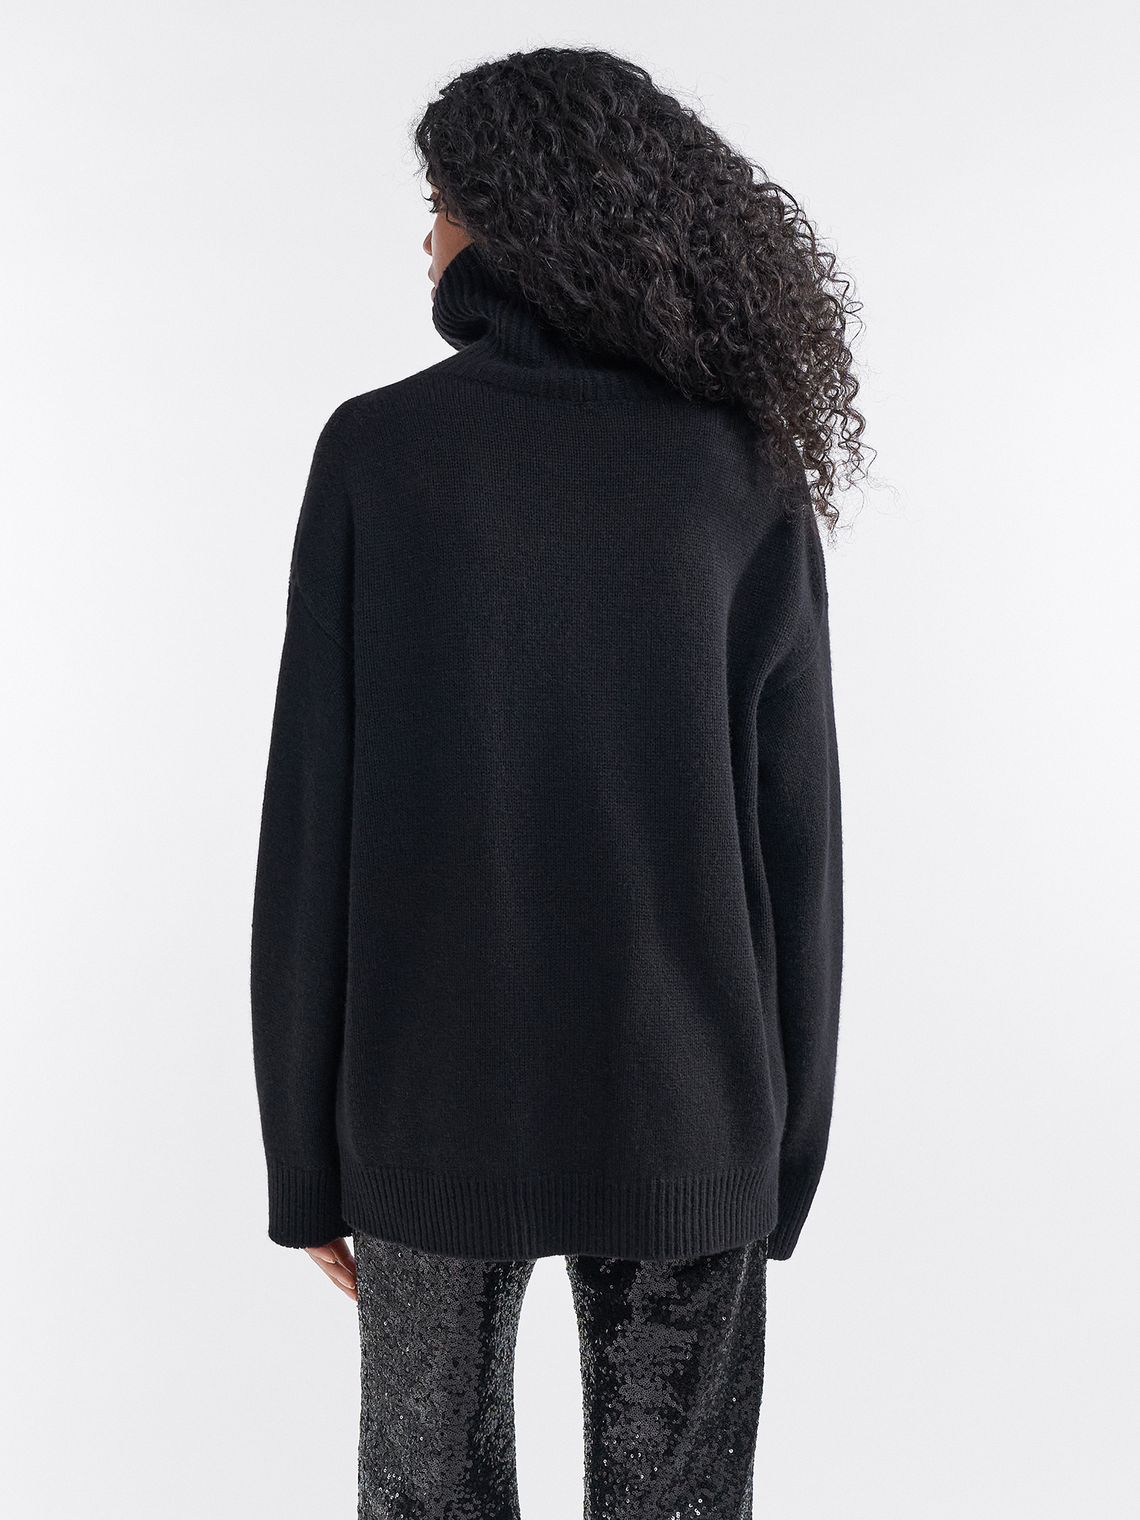 Wynona cashmere sweater by Filippa K - black